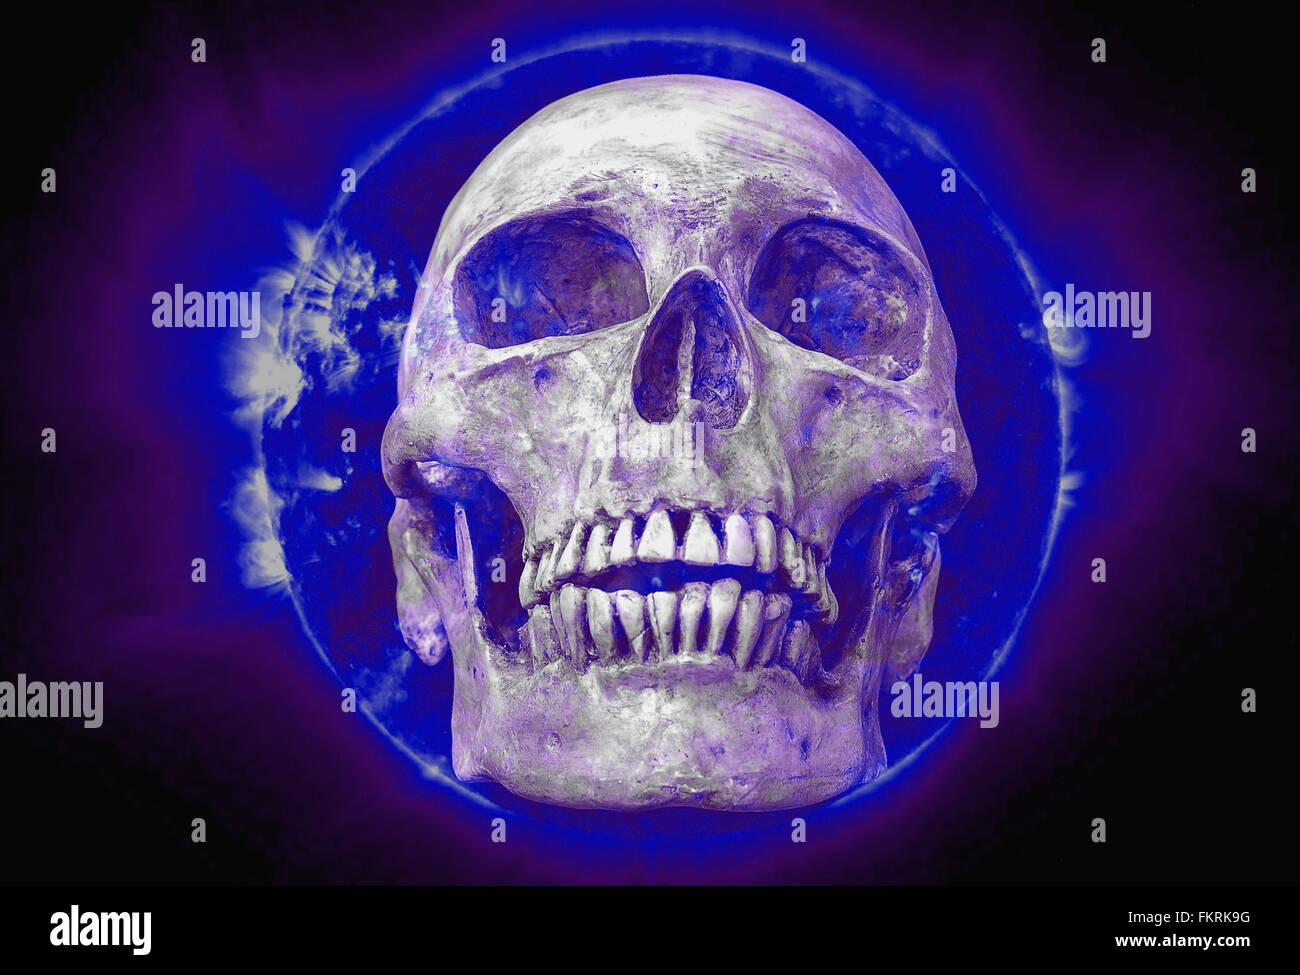 abstrakten Symbol Idee, macht der Glaube 2016, der Schädel auf blaue Sonne schwarzen Hintergrund, Sonne Bild von der NASA. Stockfoto